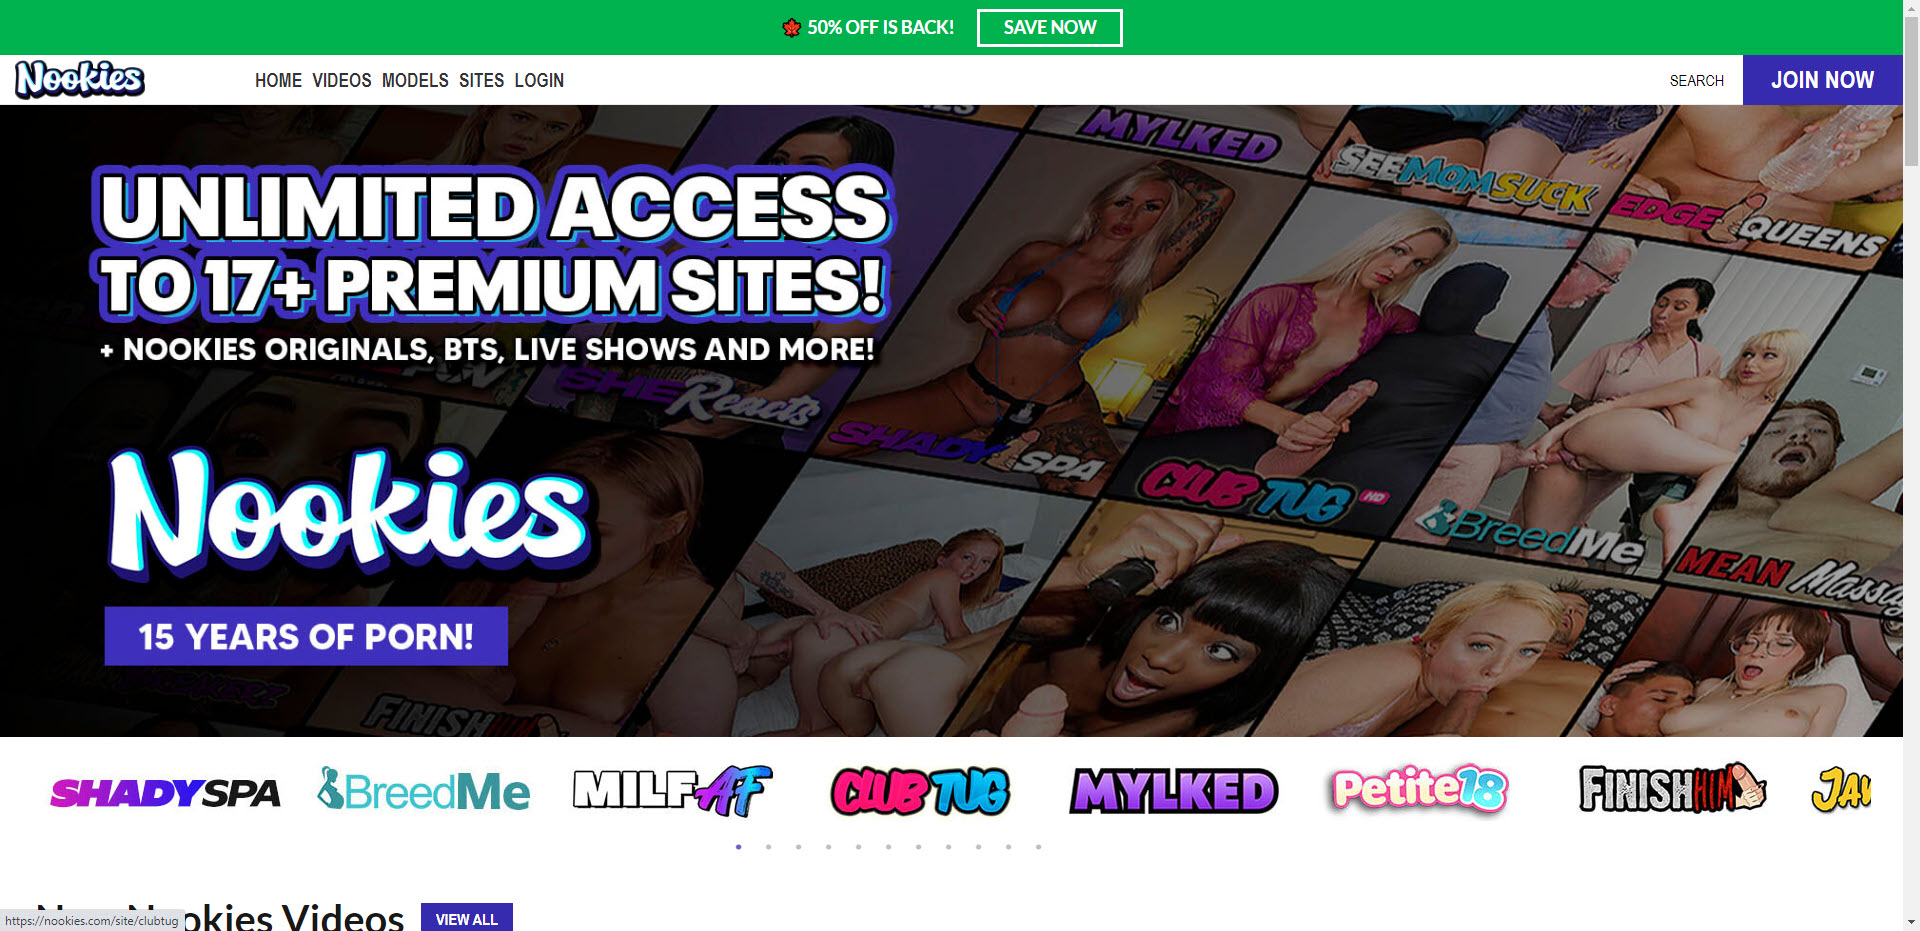 Nookies.com: The Ultimate Premium Porn Site